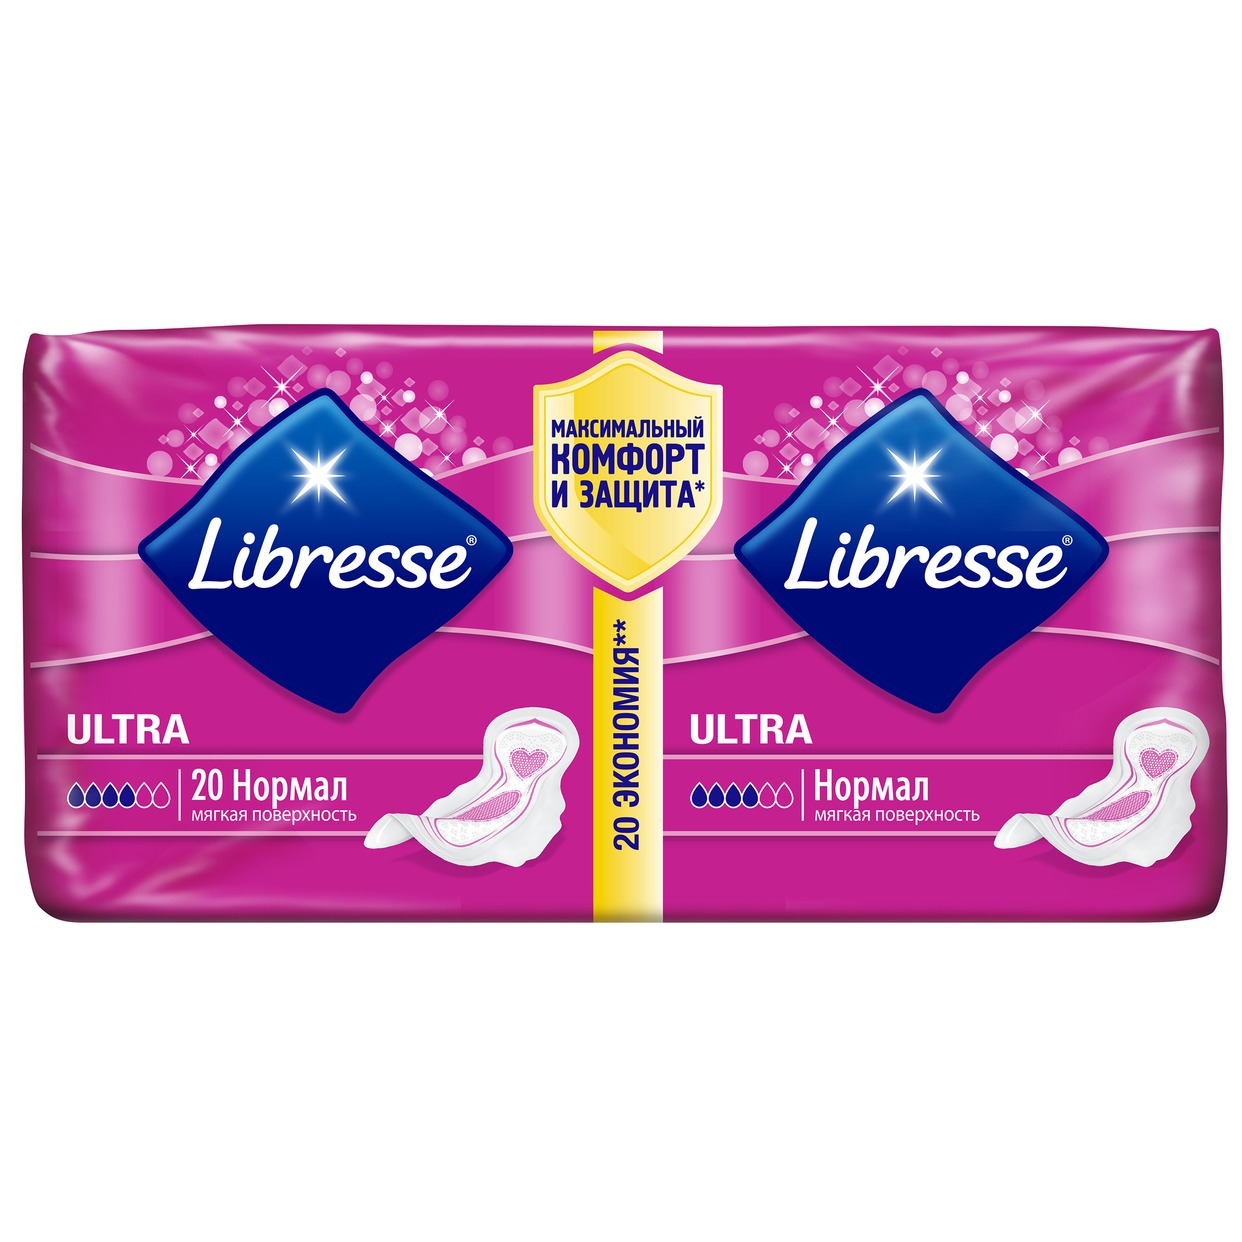 Прокладки Libresse Ultra Normal 20 шт. по акции в Пятерочке